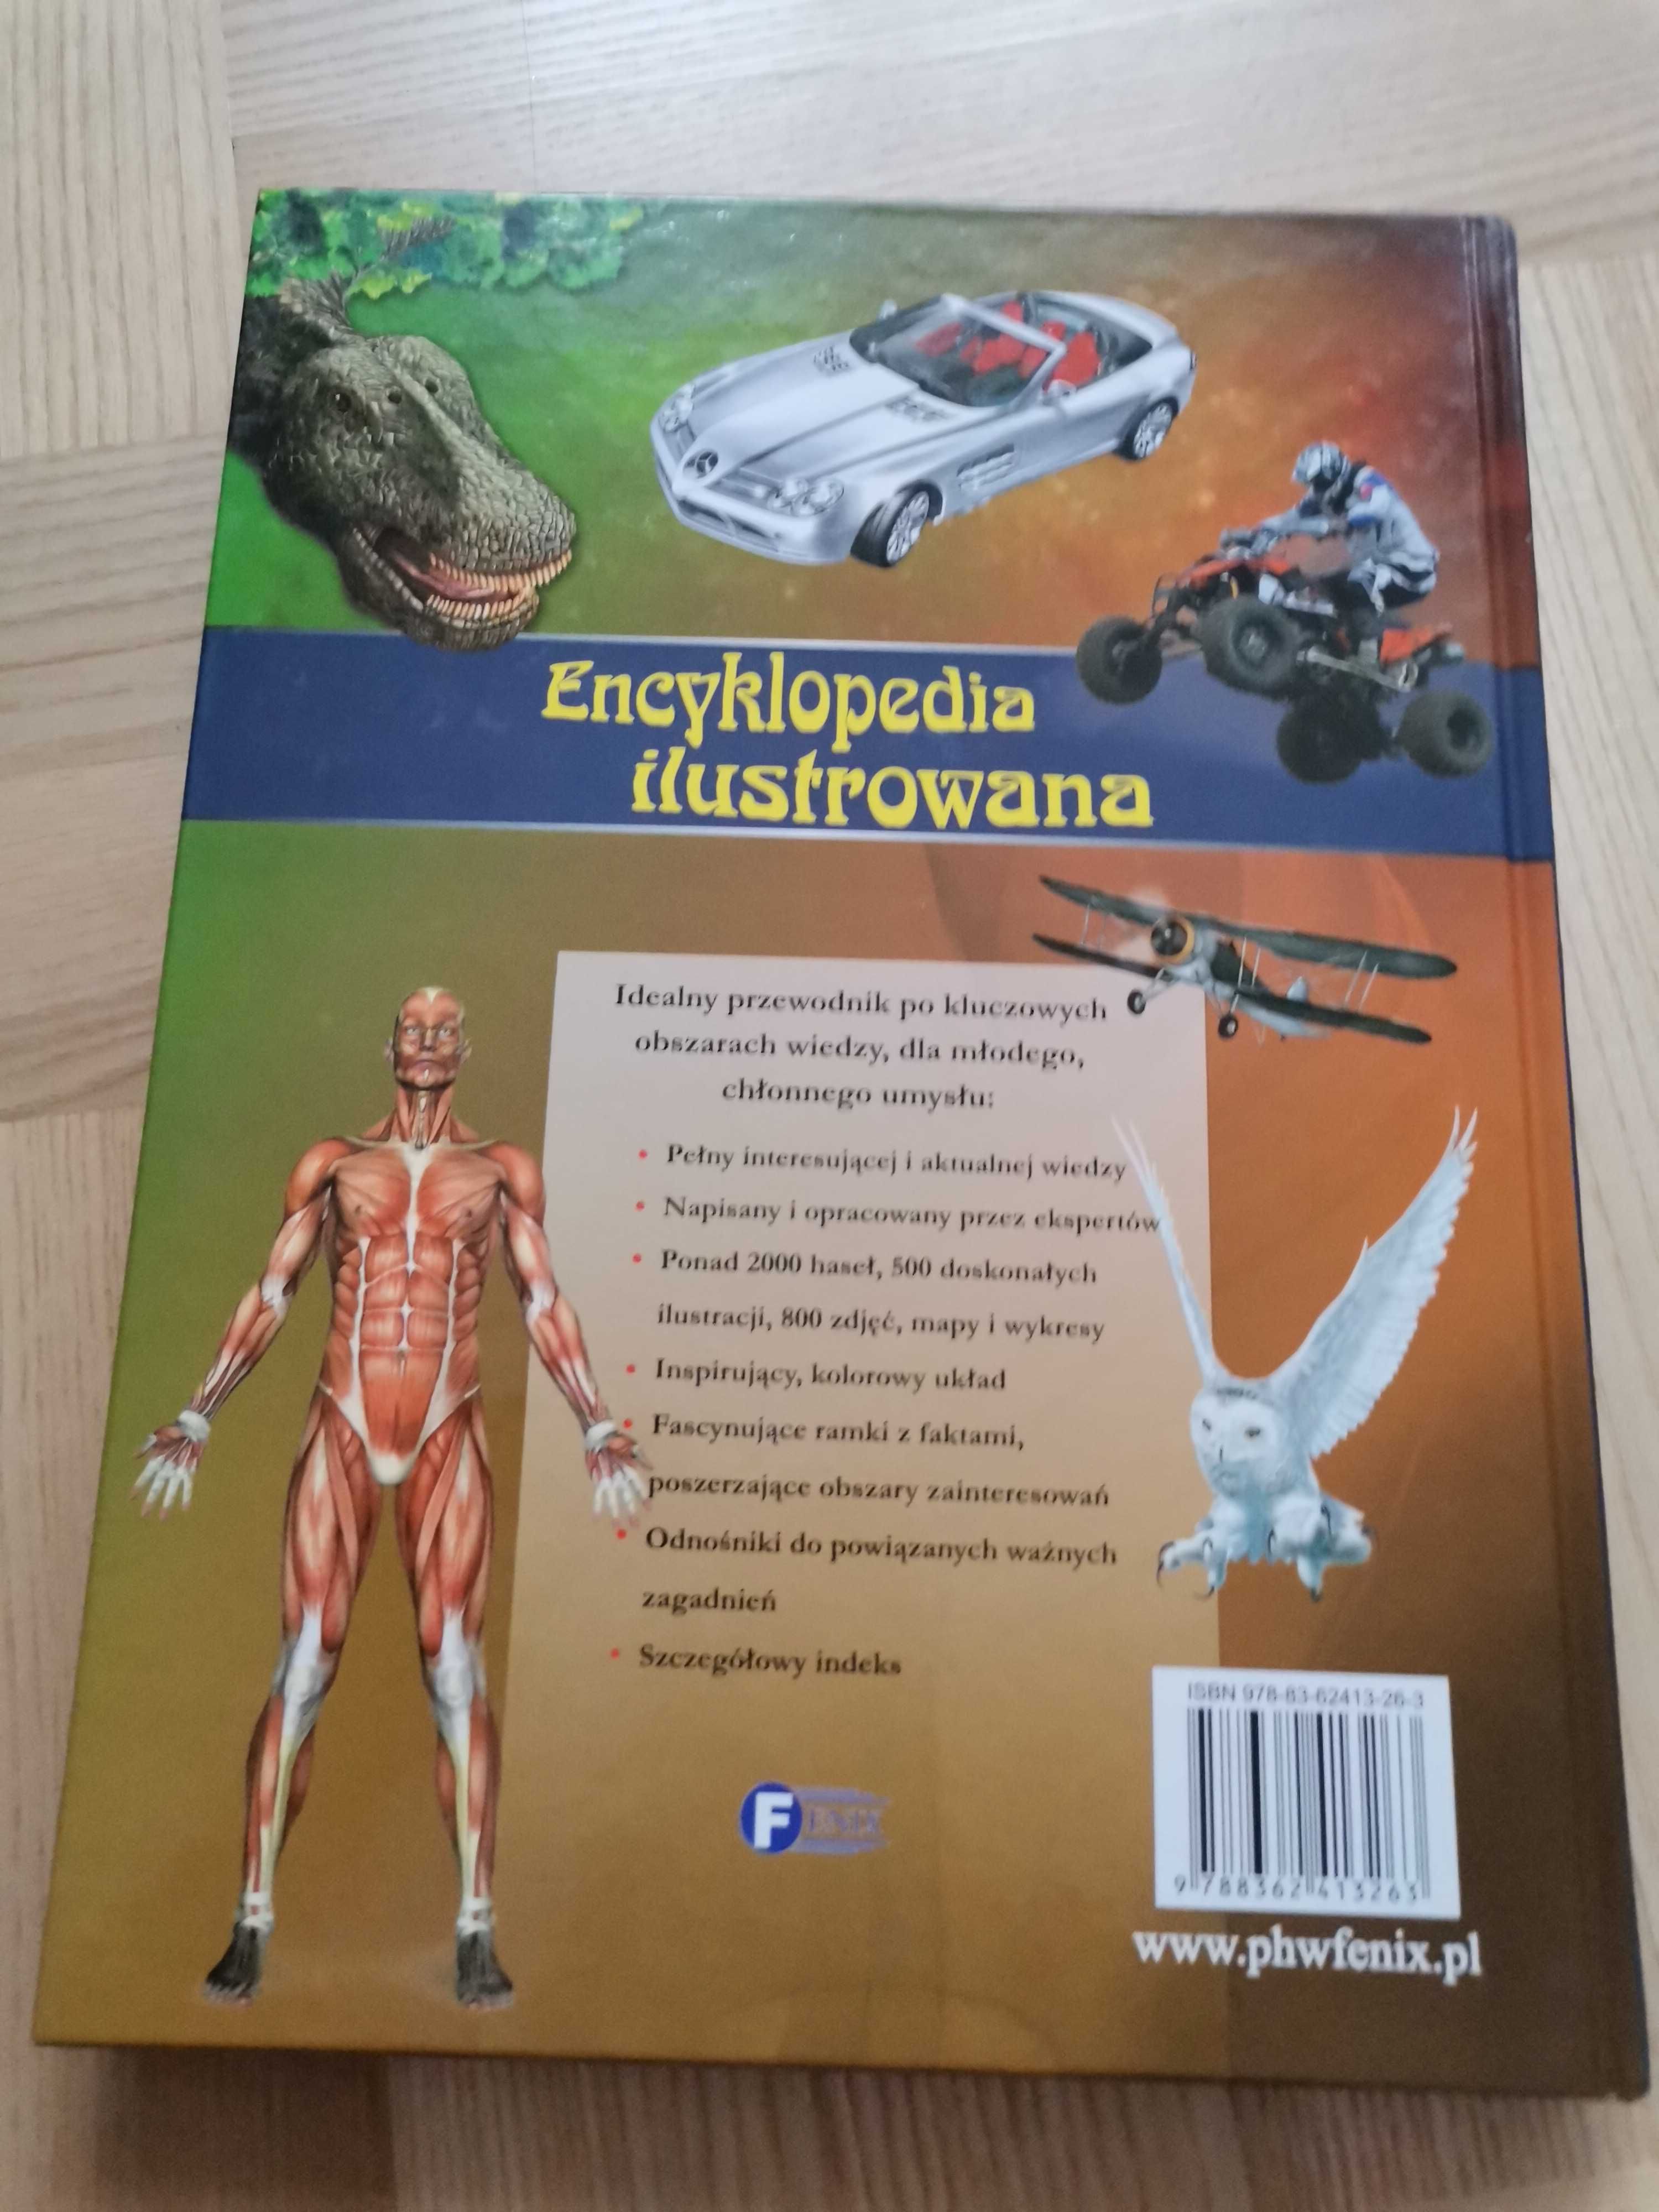 Encyklopedia dla dzieci. Nowa